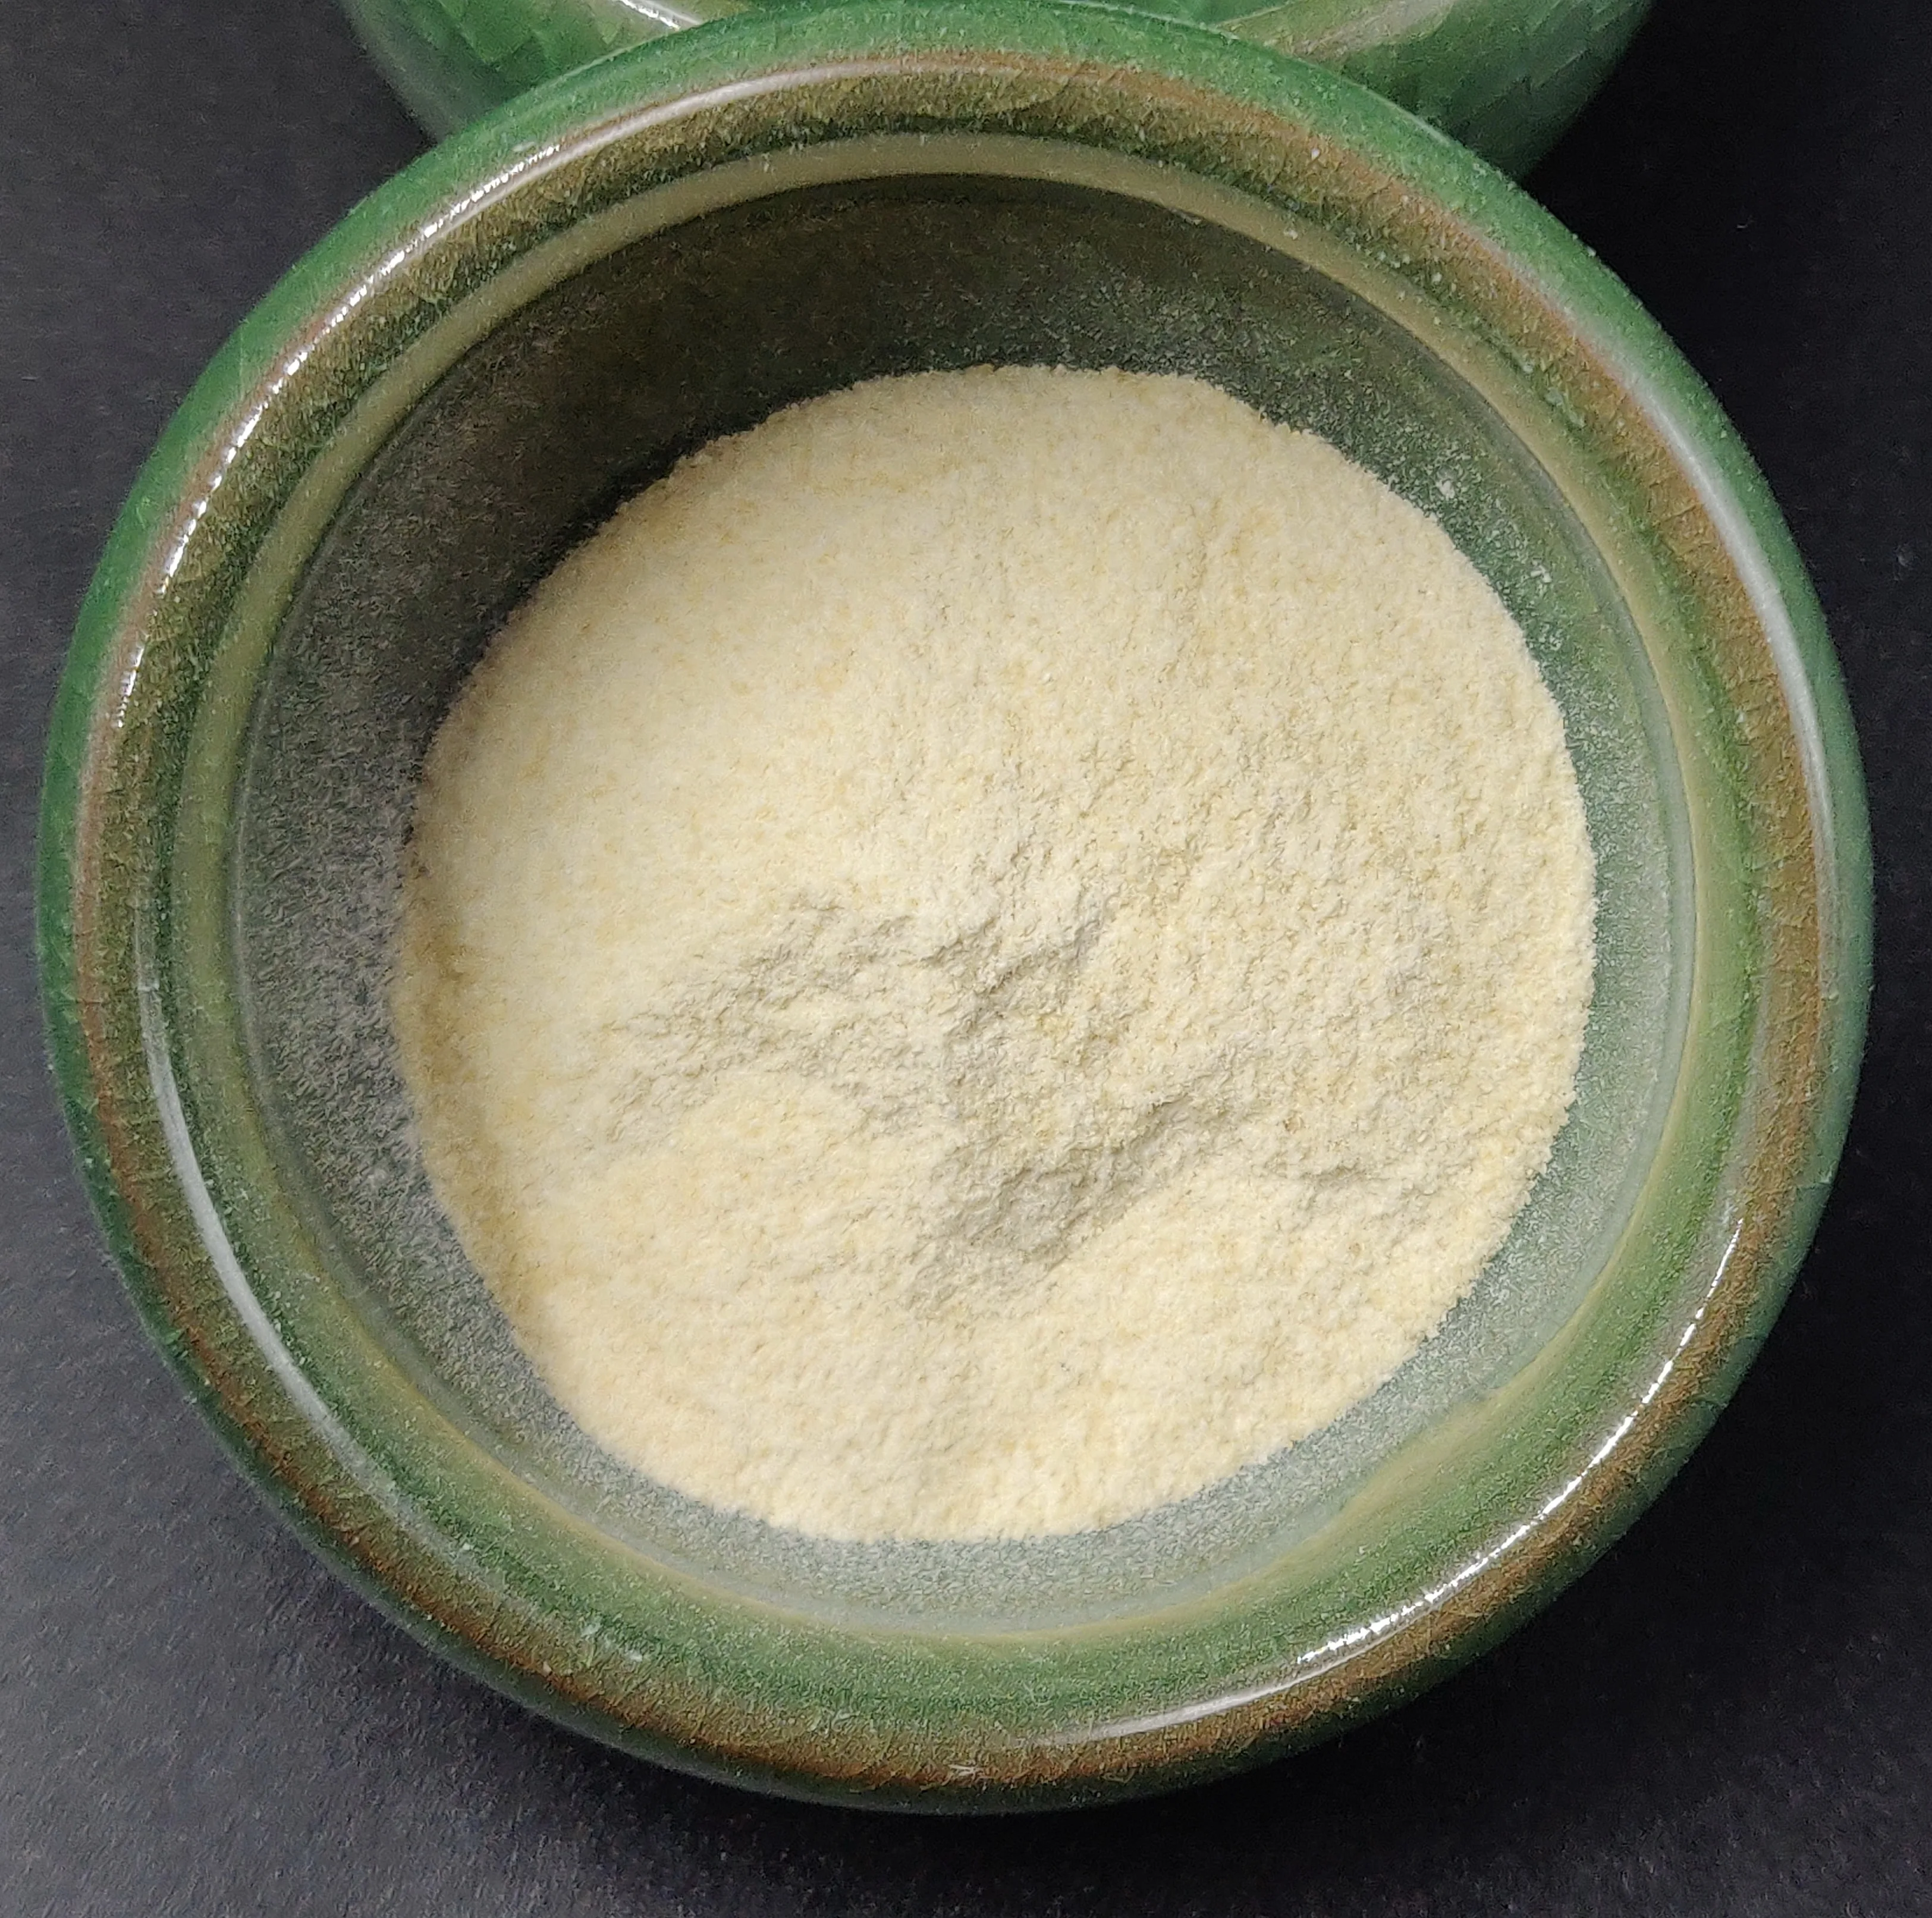 supply lowest price food grade agar agar powder cas 9002